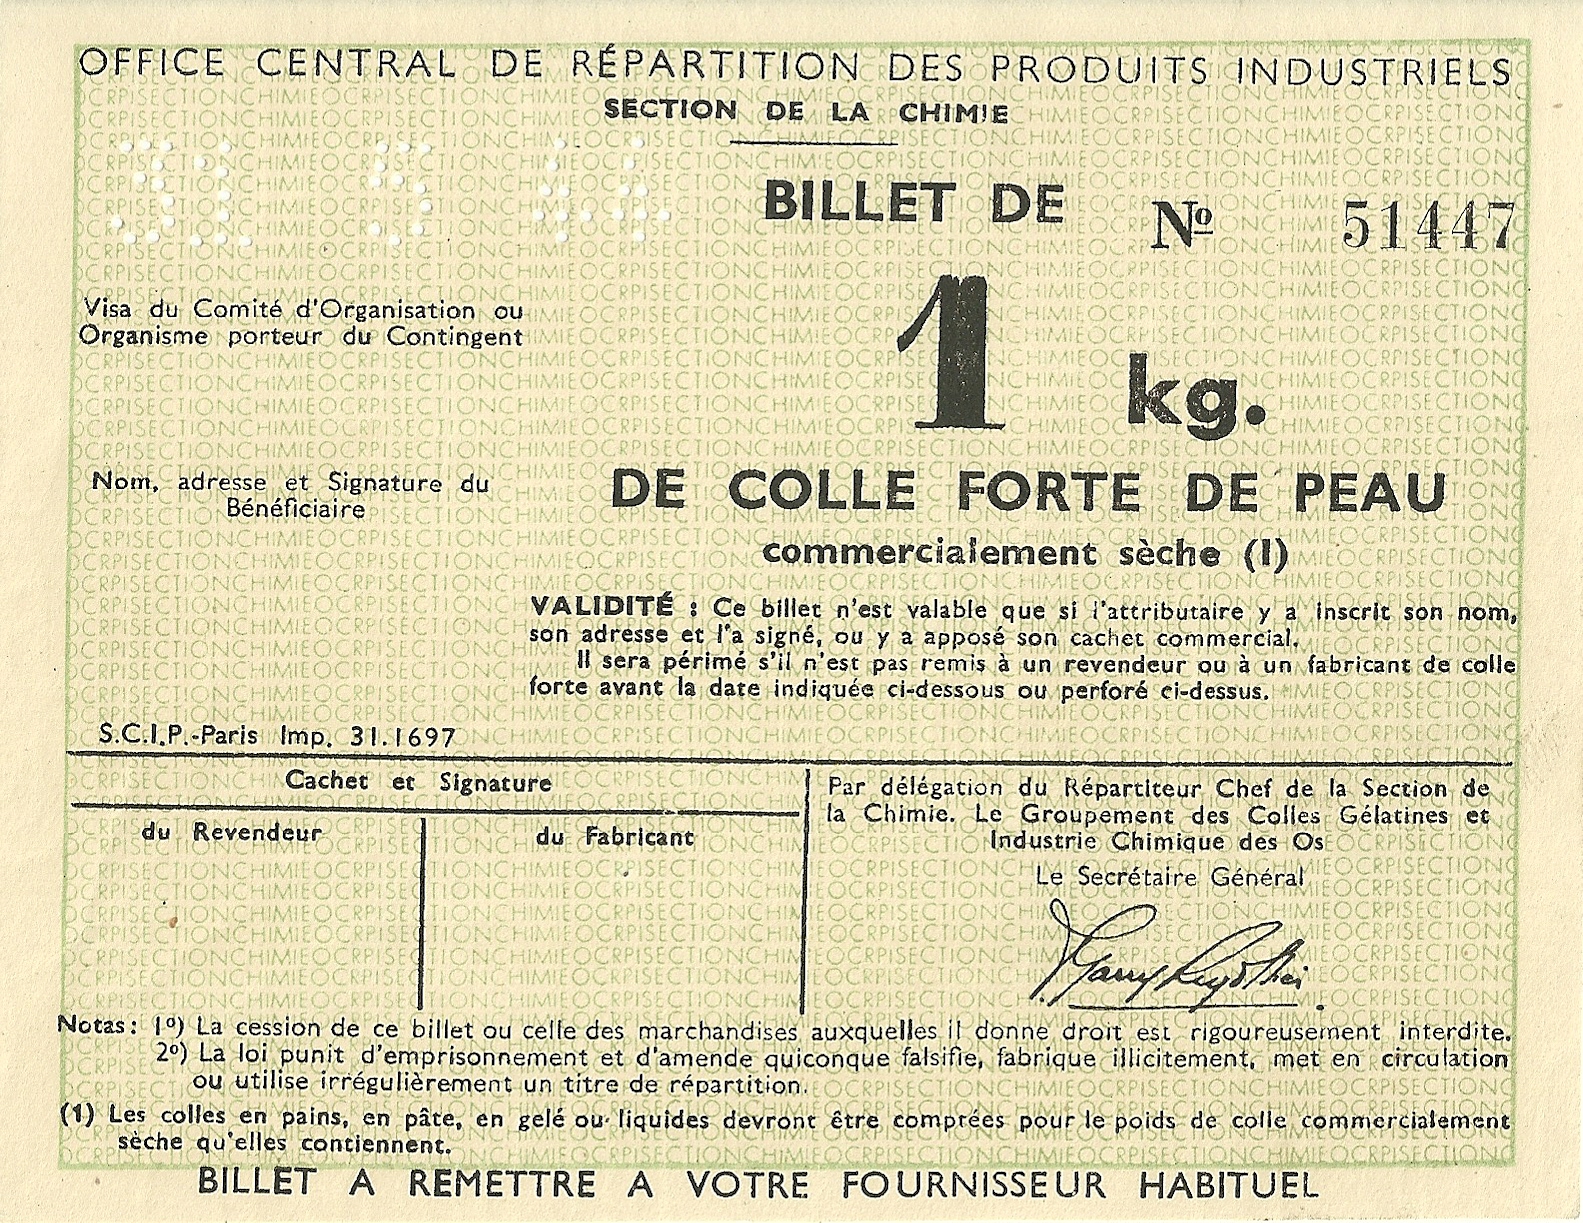 SECTION DE LA CHIMIE - BILLET DE 1 kg DE COLLE FORTE DE PEAU - 51 447